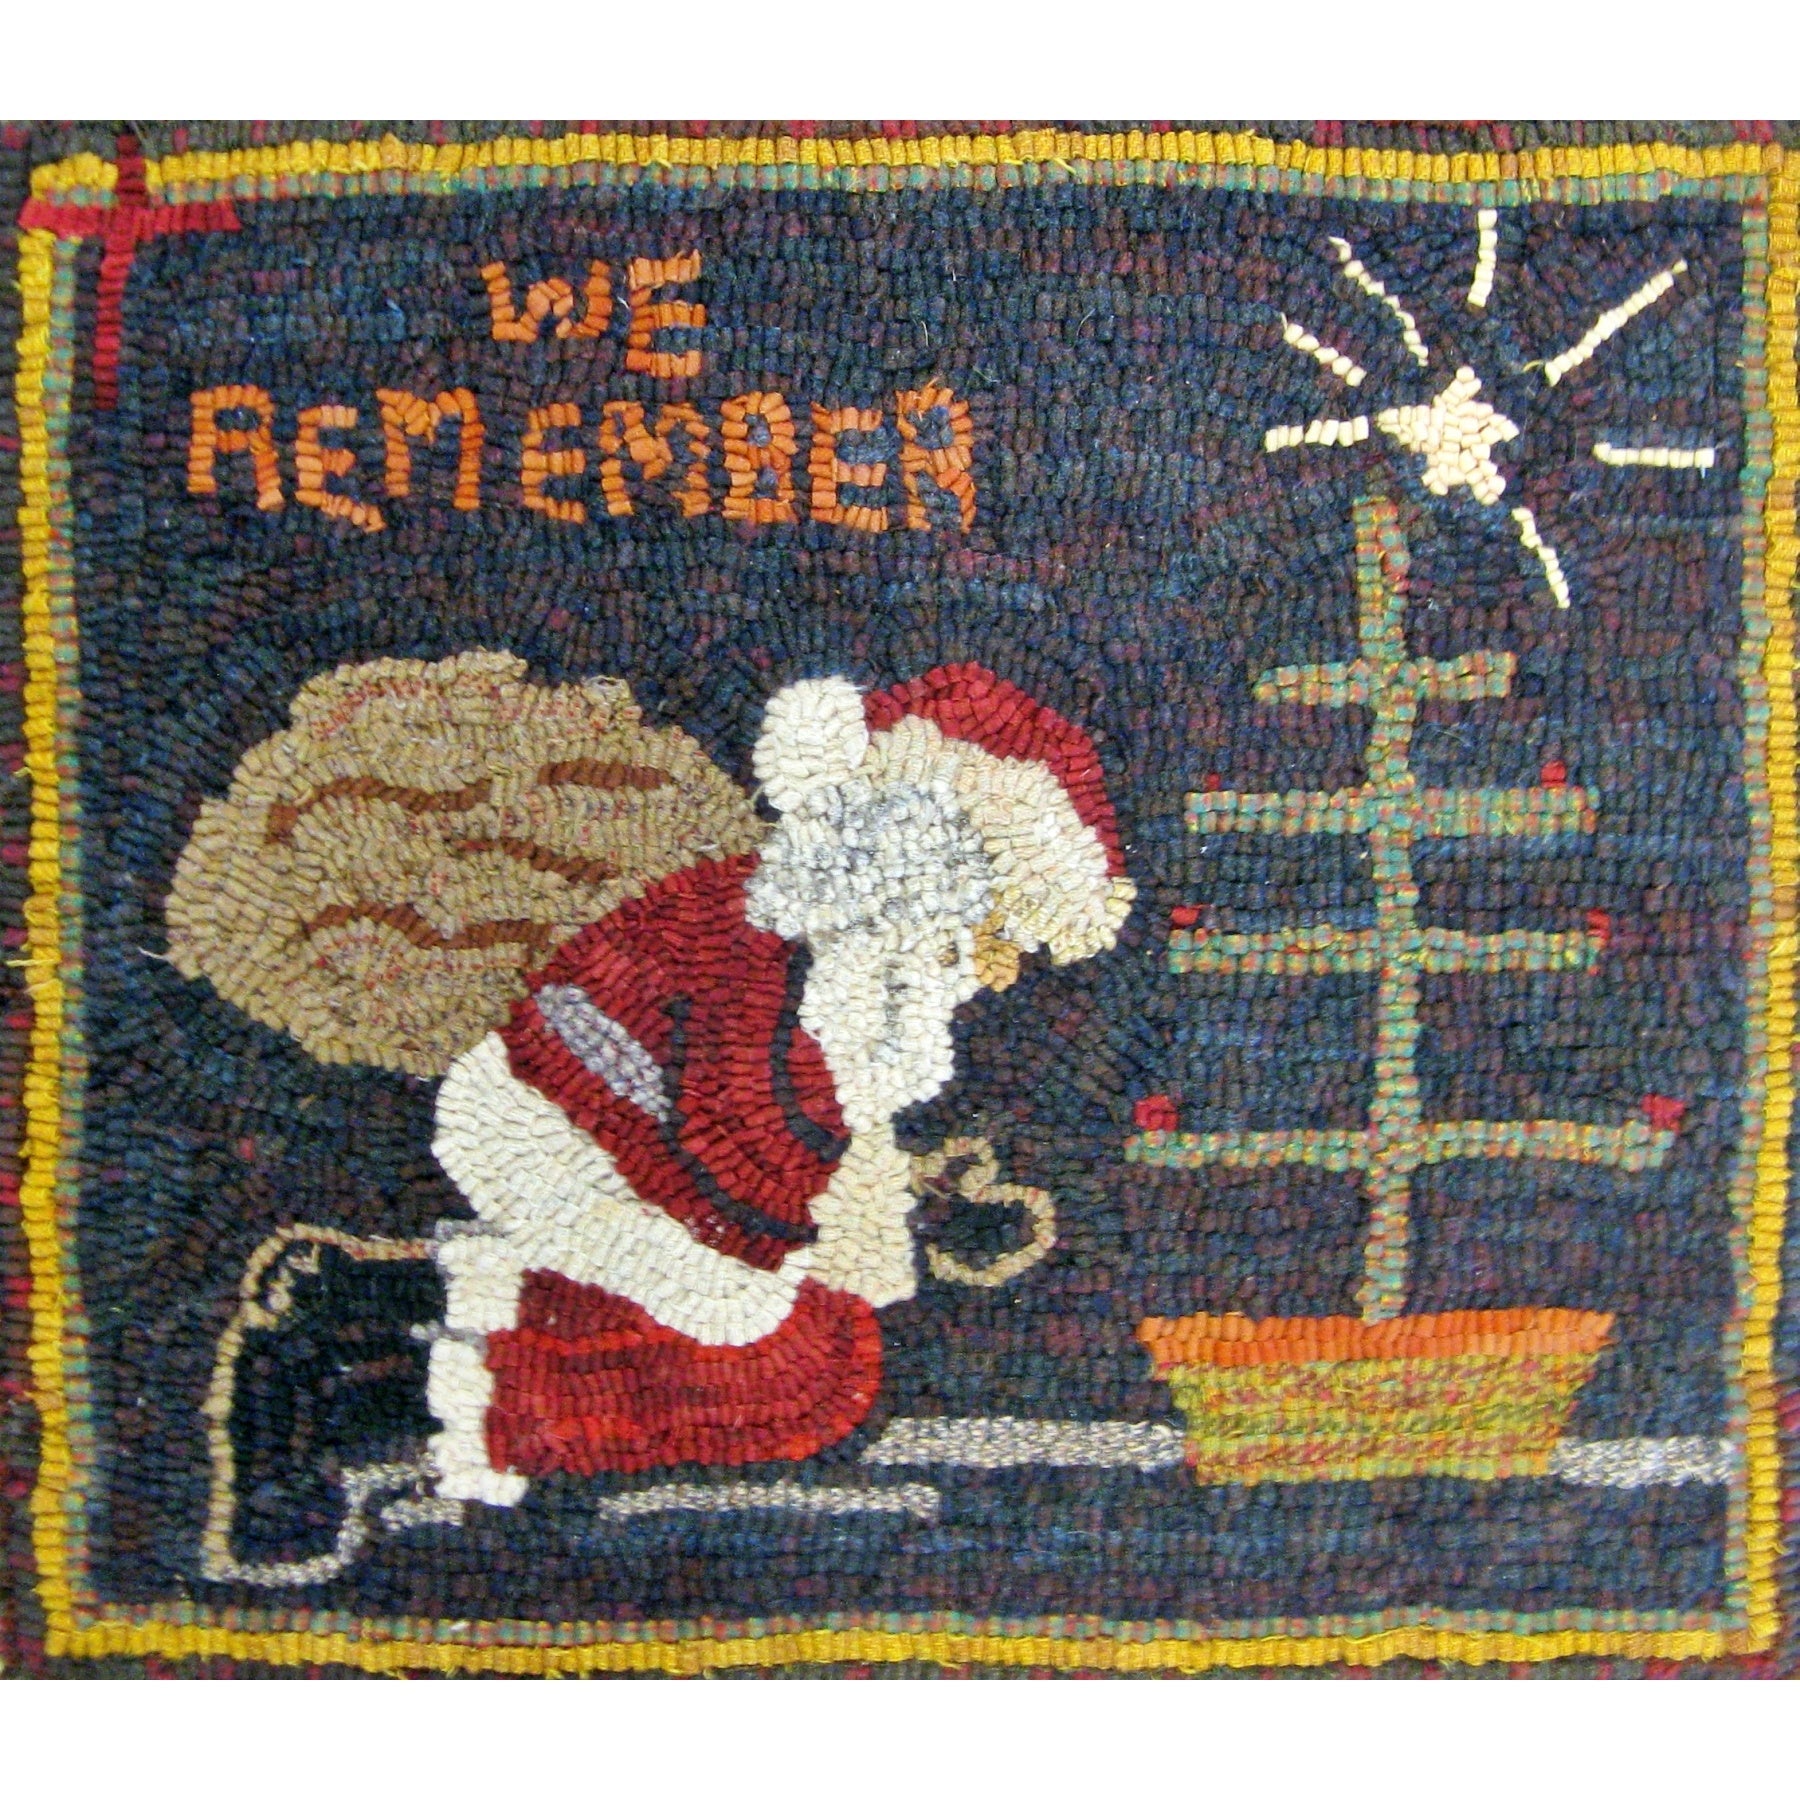 Praying Santa, rug hooked by Sylvia Titsworth